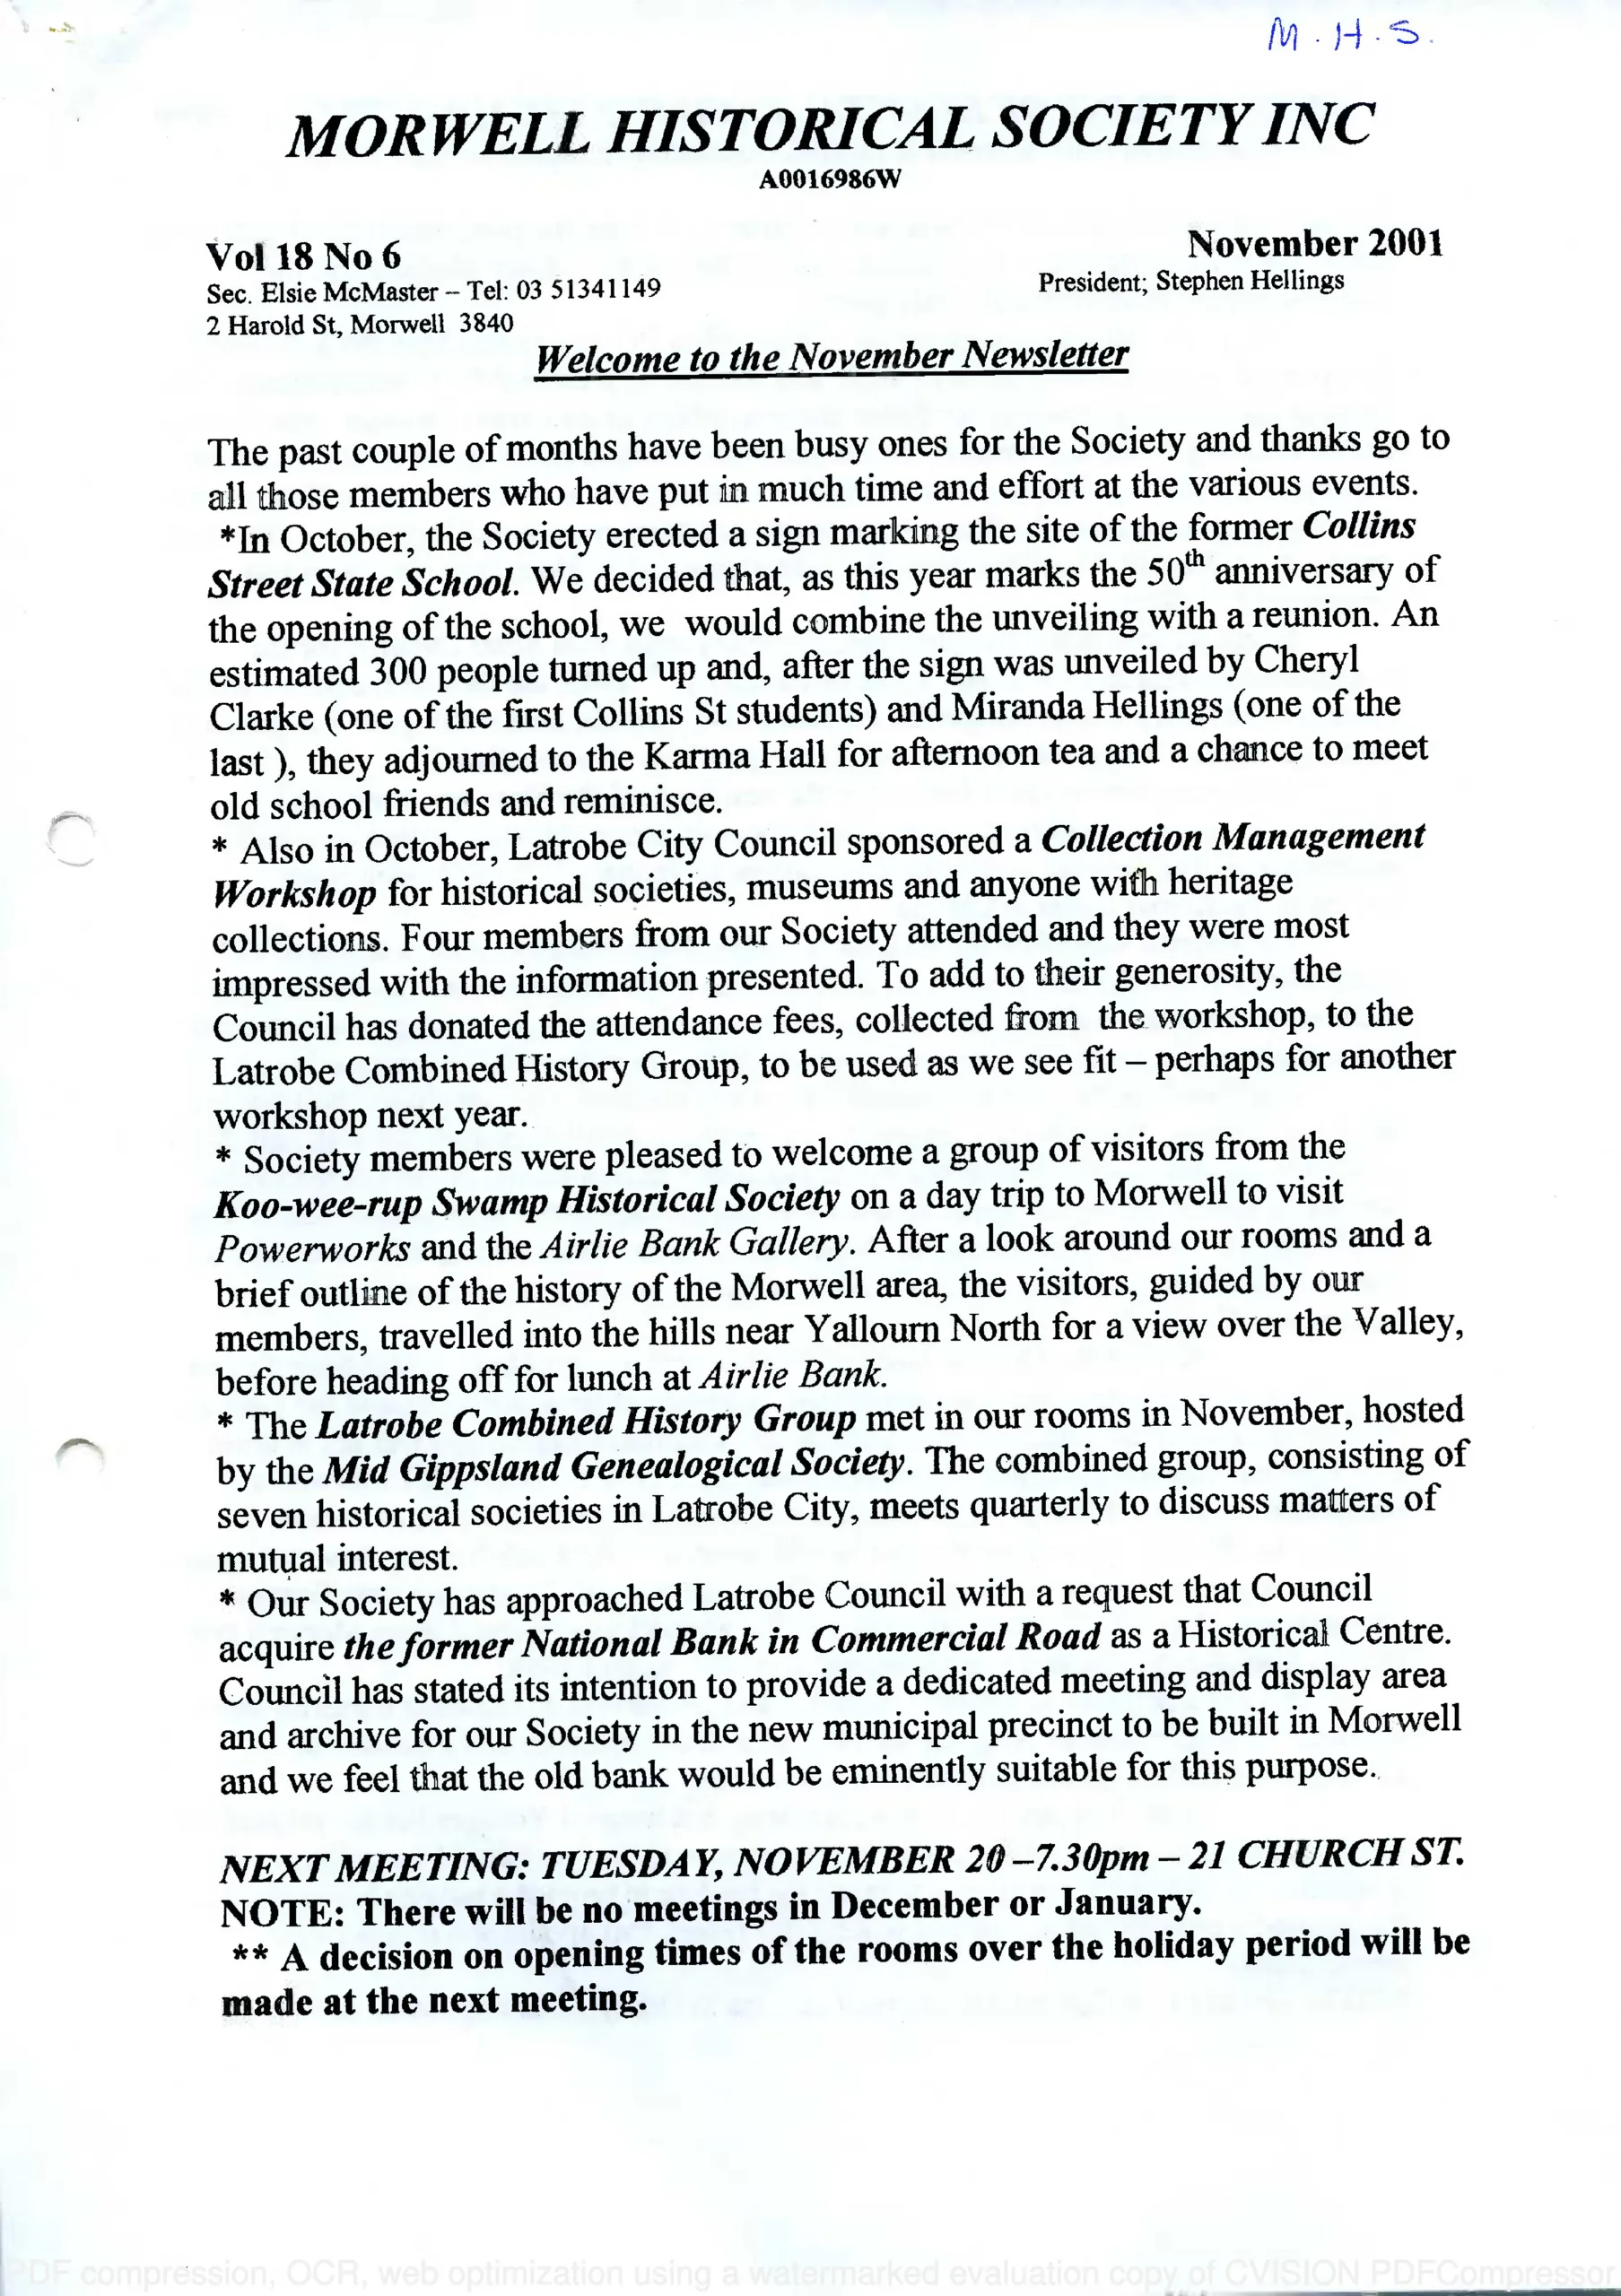 Newsletter November 2001